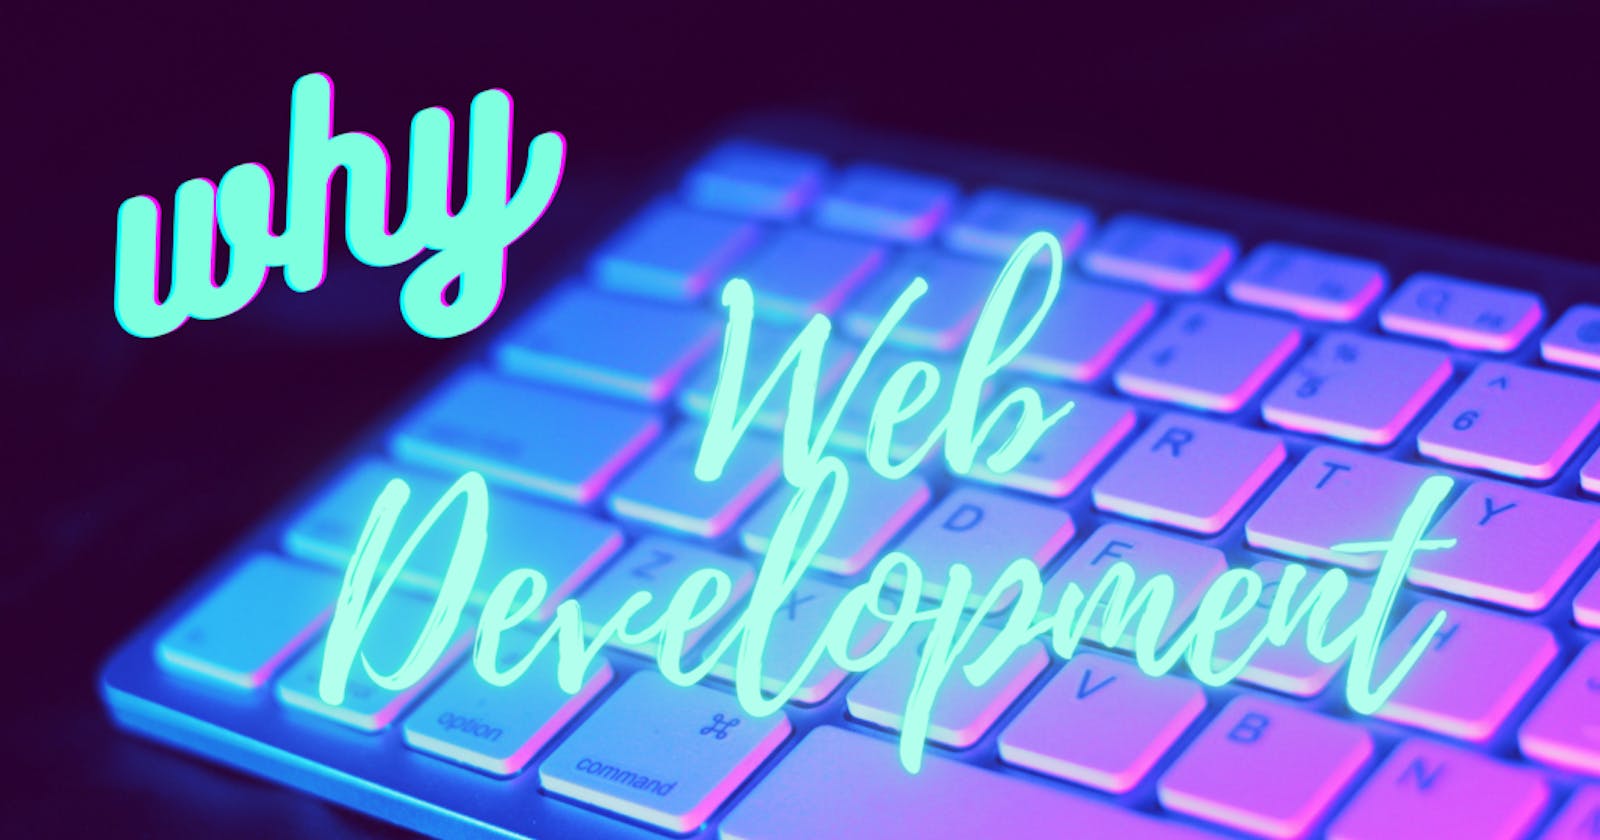 Why I choose Web Development?